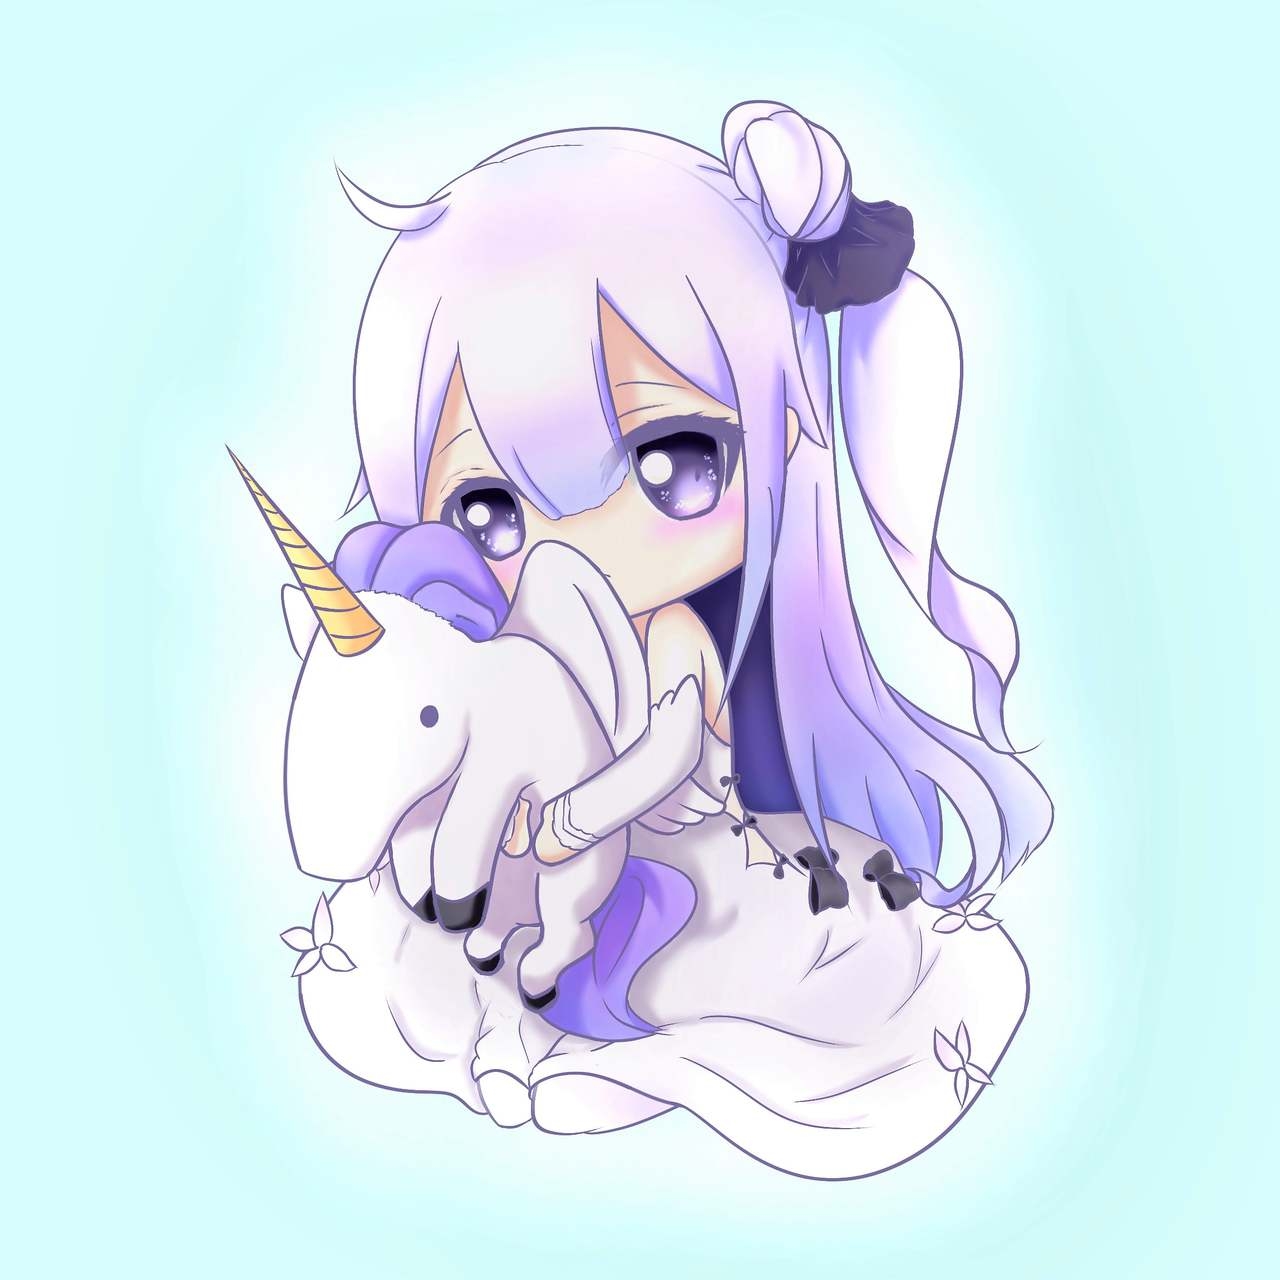 Azur Lane Character Fan Art Gallery - Unicorn 7